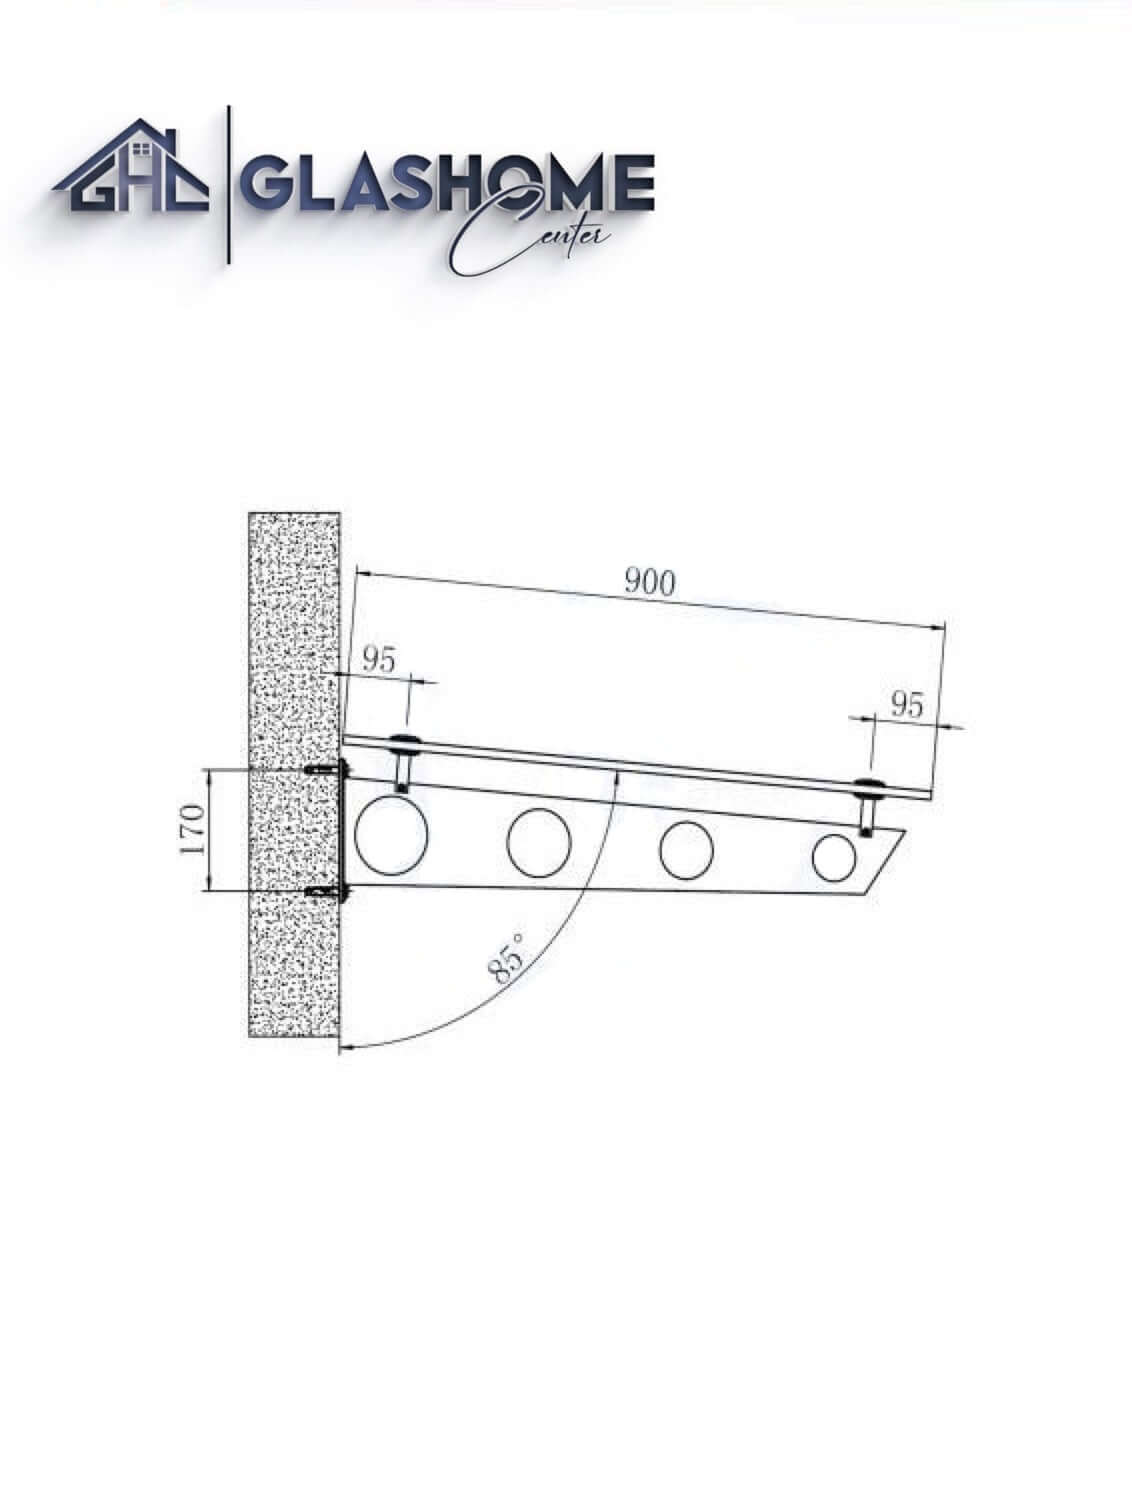 GlasHomeCenter - baldacchino in vetro - vetro trasparente - 150x90 cm - vetro di sicurezza stratificato 13,1 mm - incl.2 staffe in acciaio inossidabile nero variante "Stoccolma"